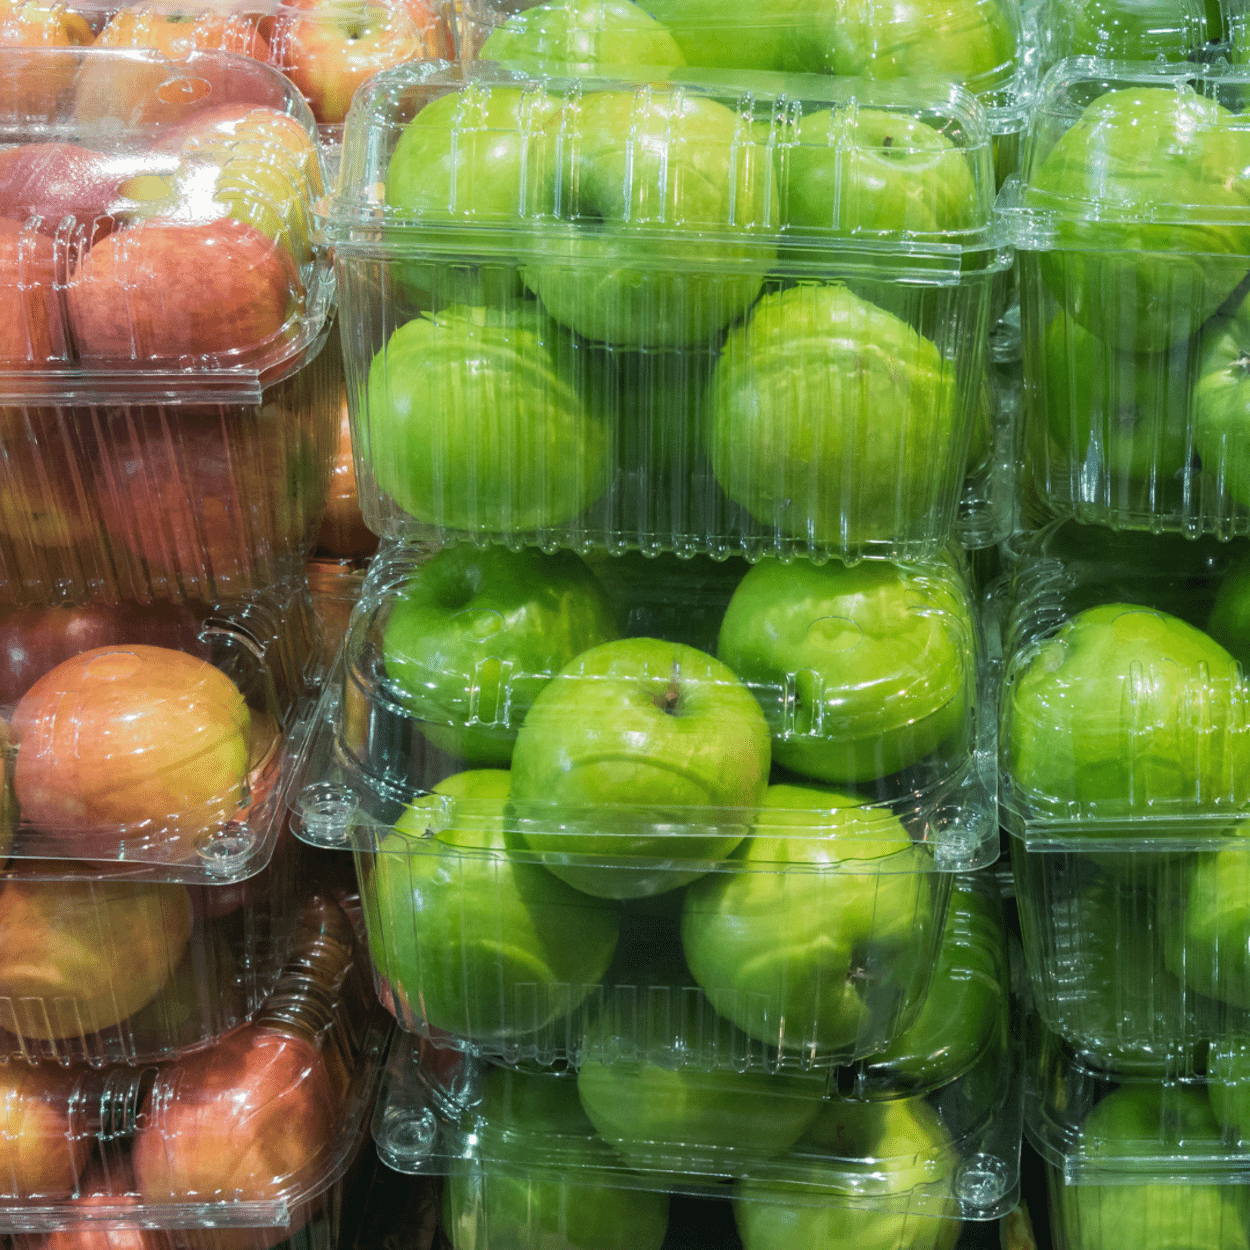 Alltägliche Realität im Supermarkt: Produkte aufwendig verpackt in Plastik